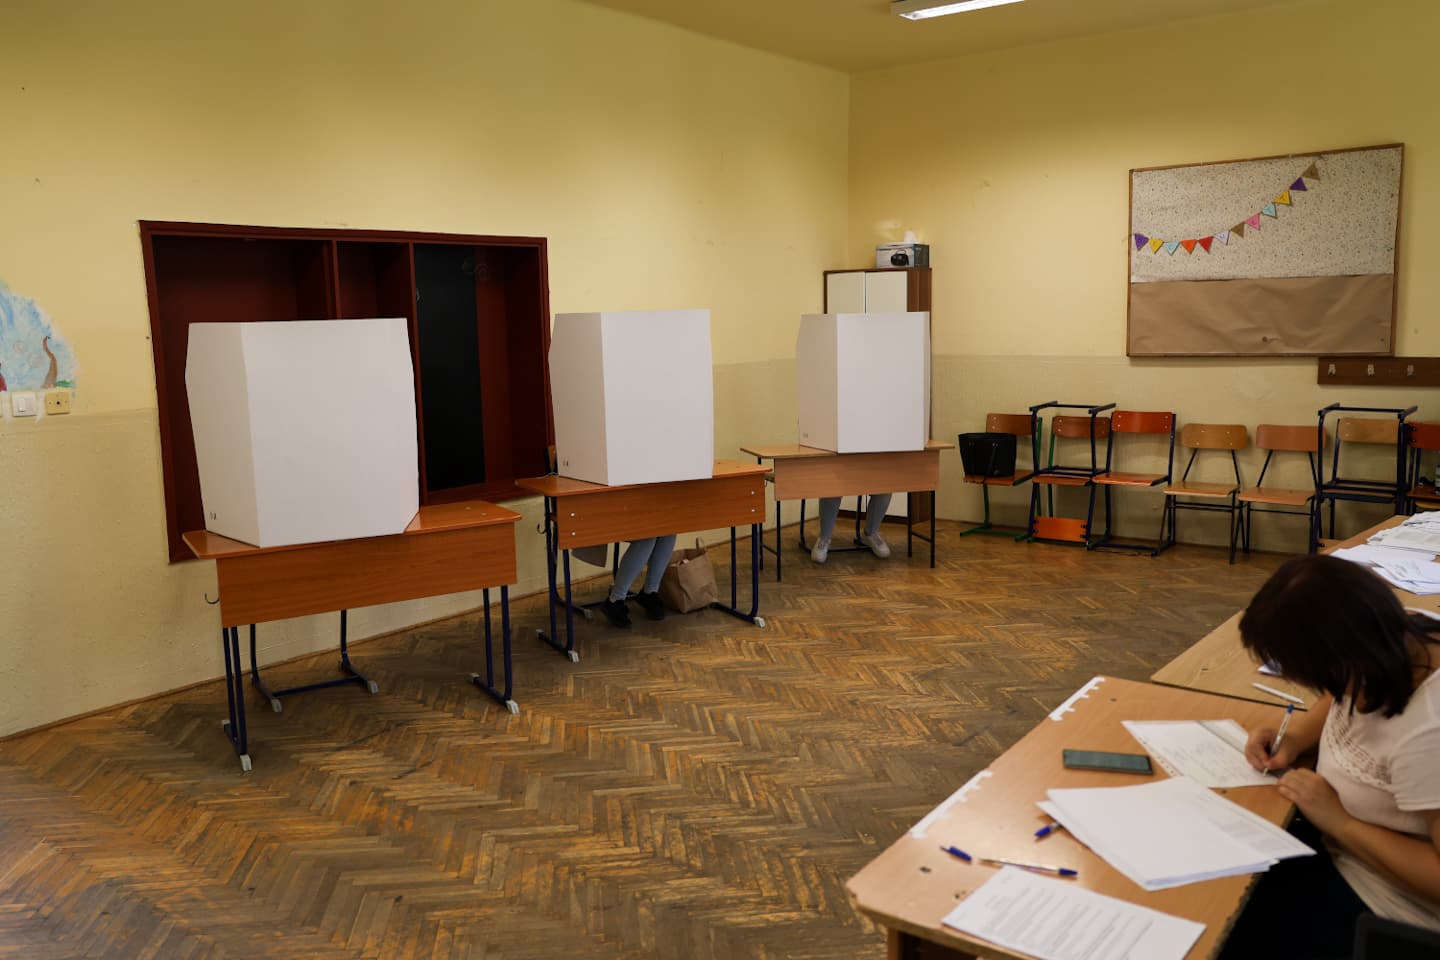 Rosszul lett a választási bizottság egyik tagja, meghosszabbították a szavazást Petržalkán az egyik szavazókörben